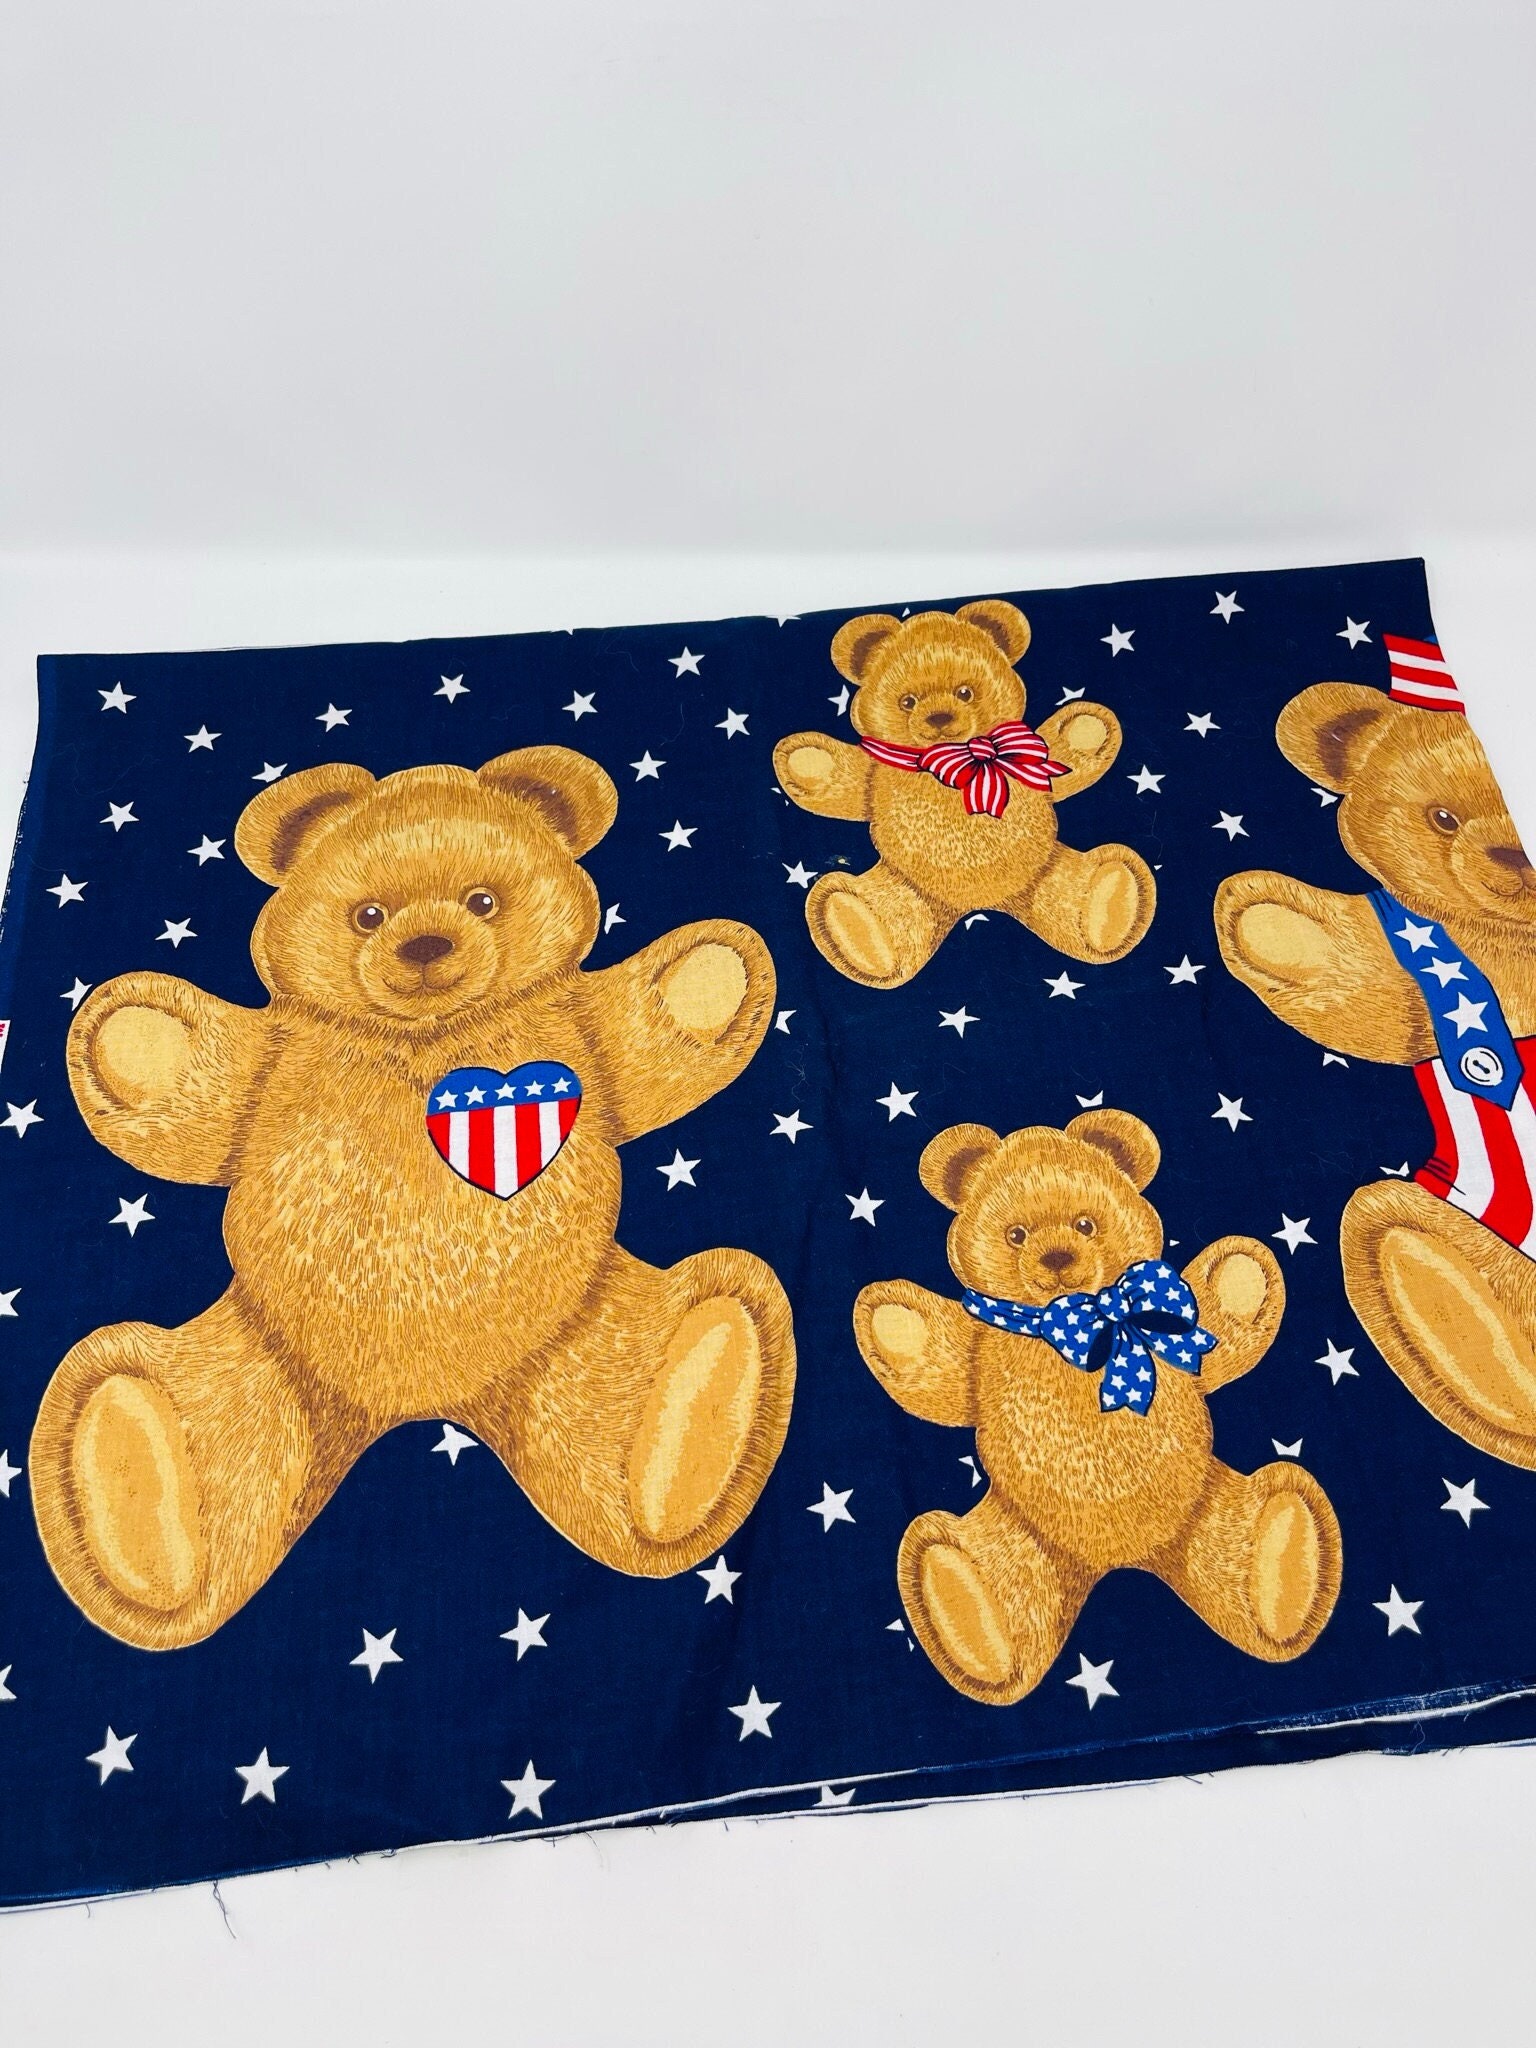 Patriotic Fabric Handmade Teddy Bear -  Hong Kong